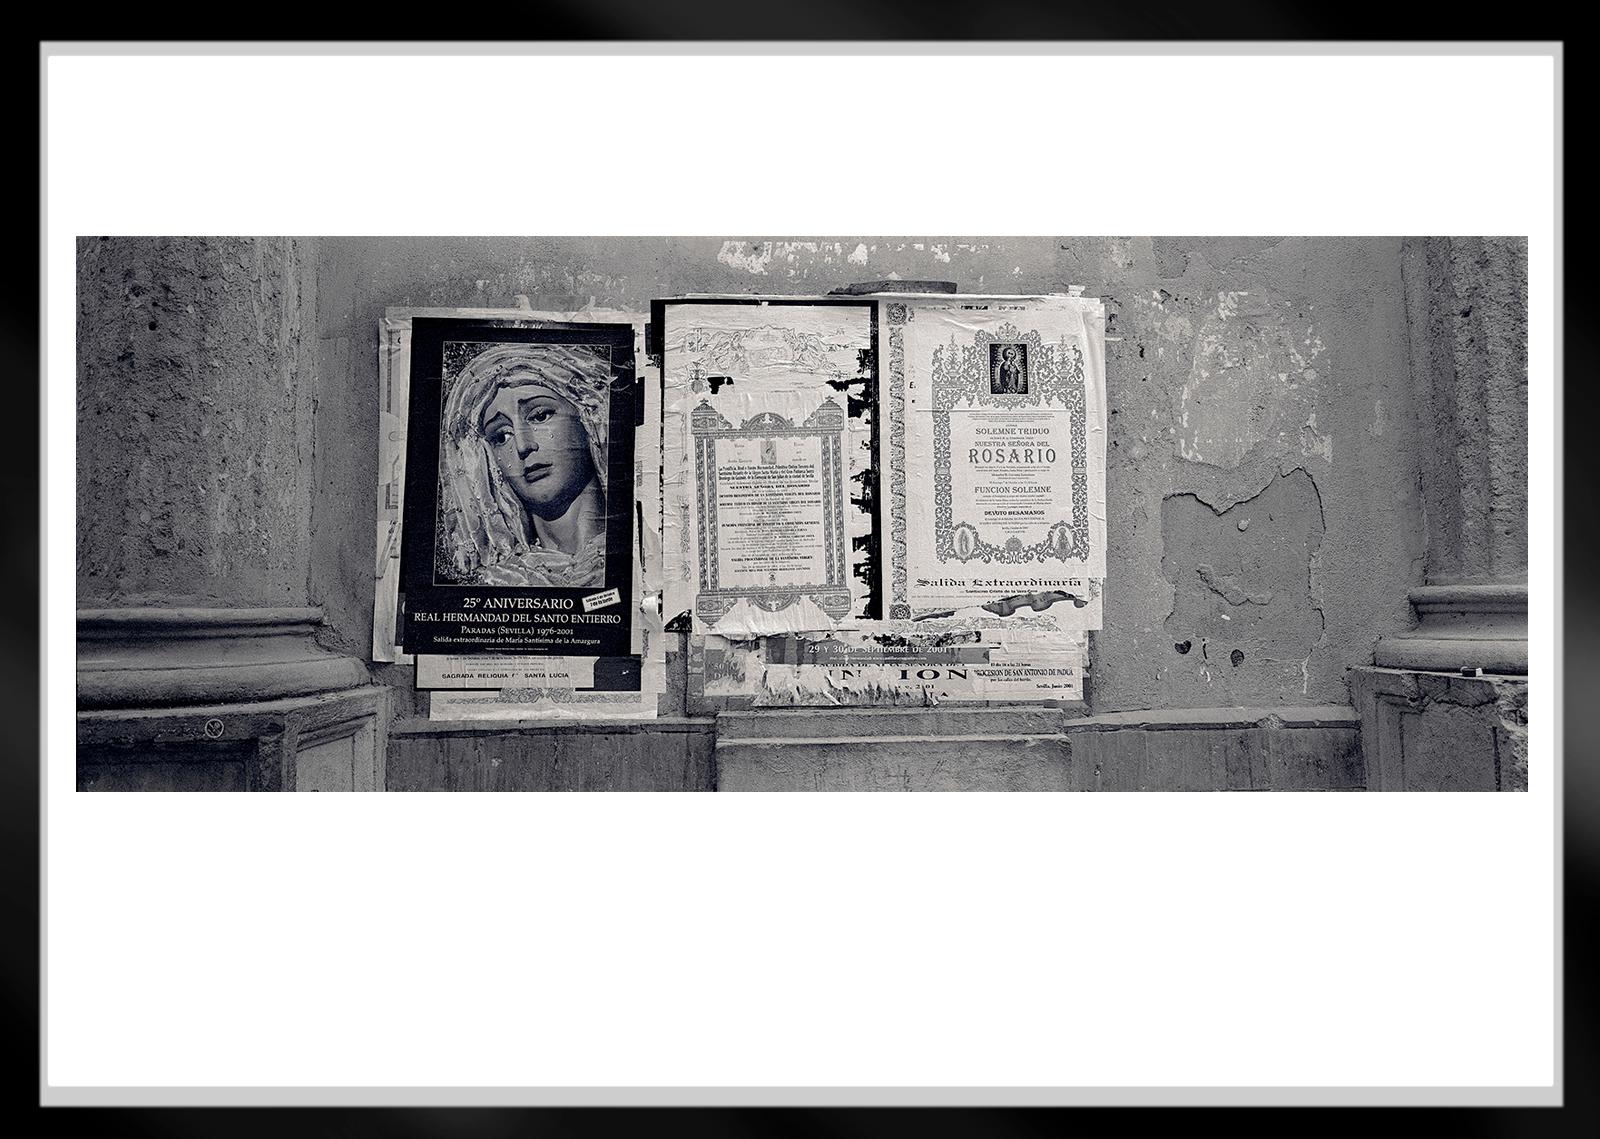 Madonna – signierter Kunstdruck in limitierter Auflage, zeitgenössisches Stillleben Archi (Grau), Black and White Photograph, von Ian Sanderson